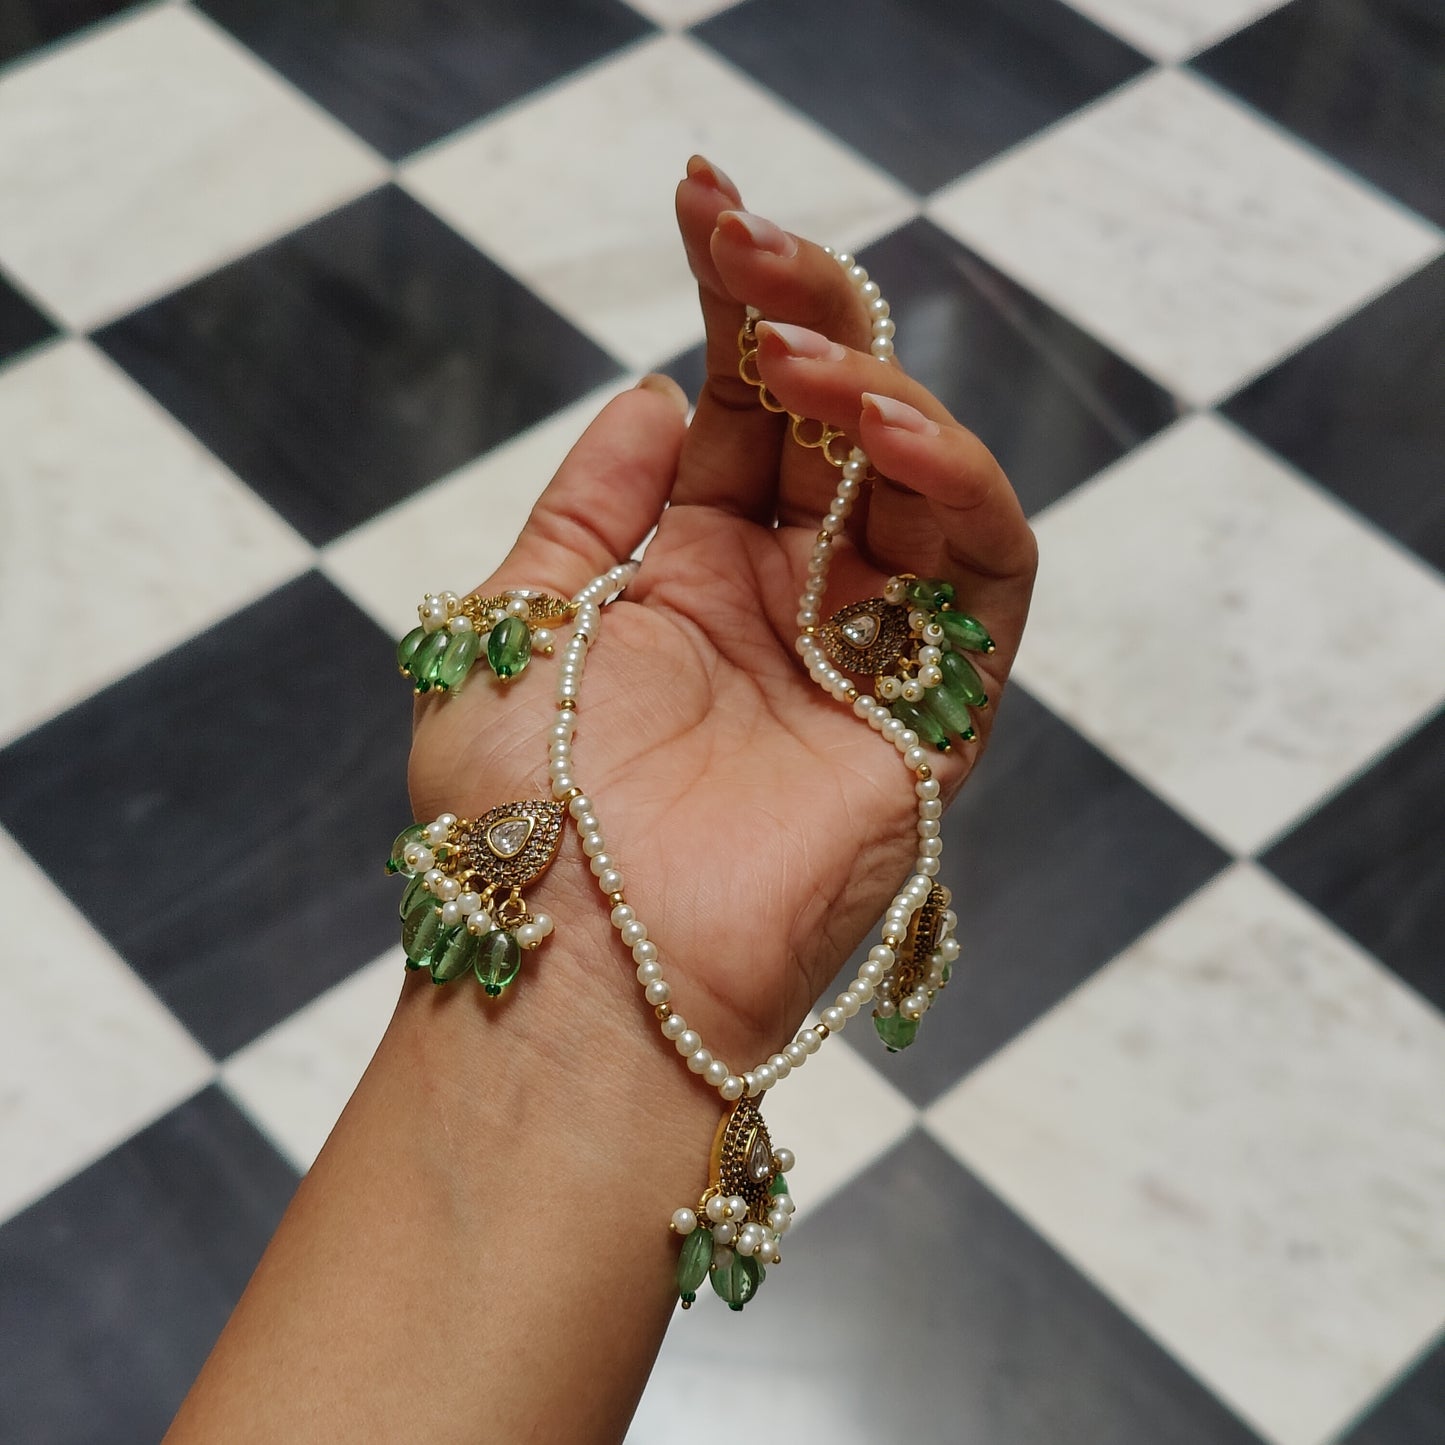 Samsara Necklace with studs